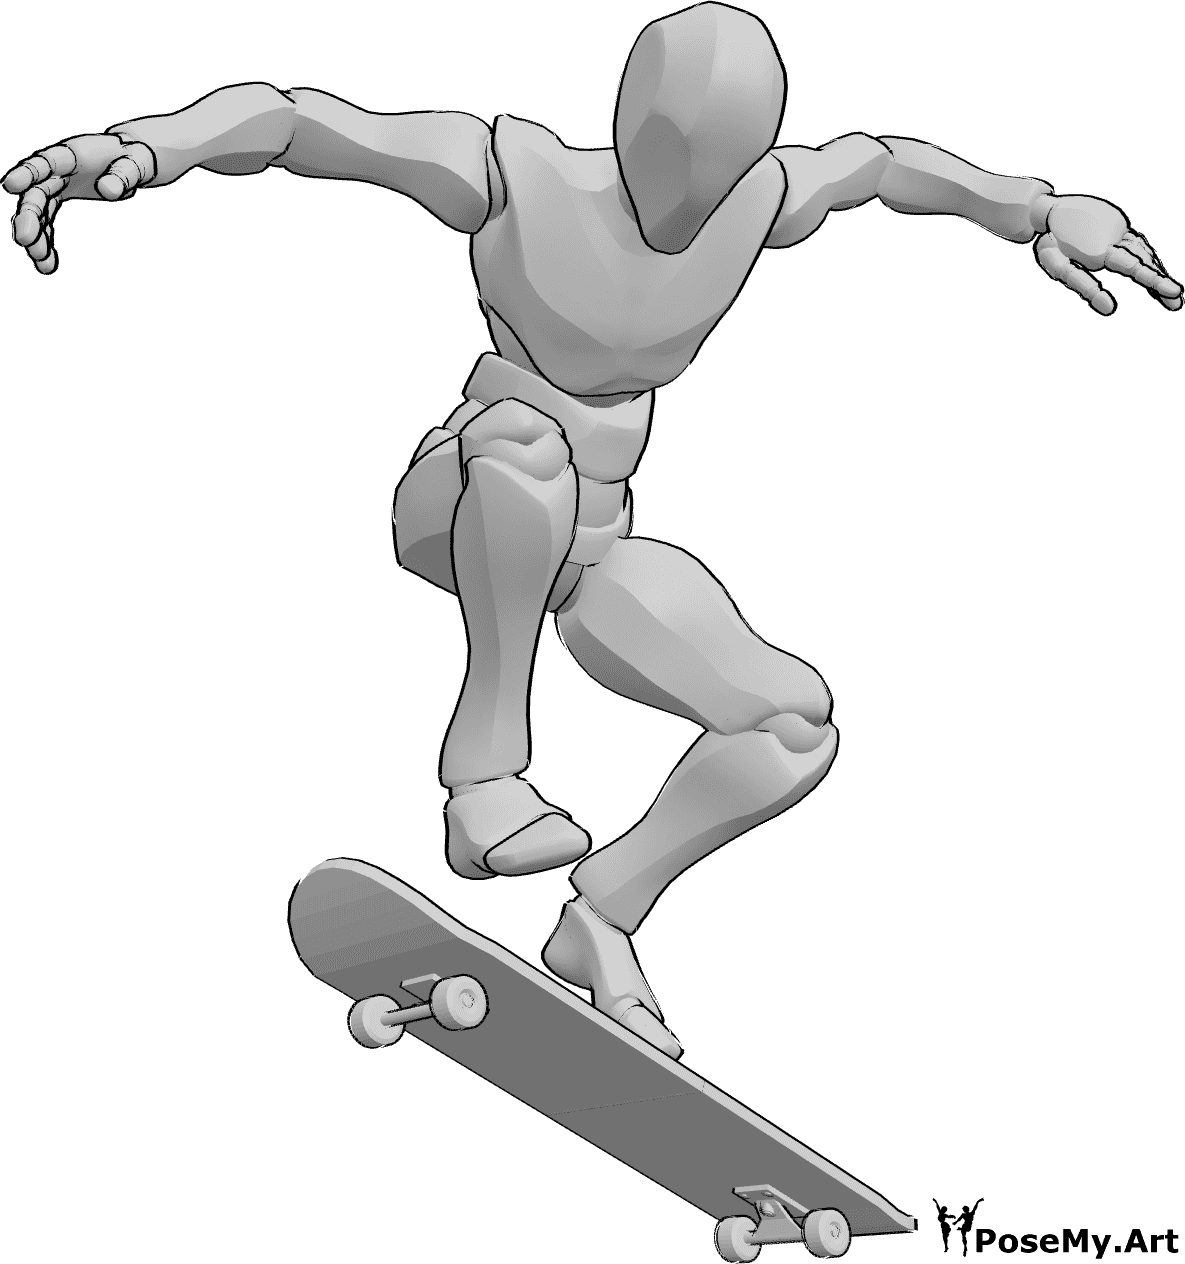 Referência de poses- Pose de kickflip de skate - Homem anda de skate, fazendo um kickflip no ar, referência de desenho de skate